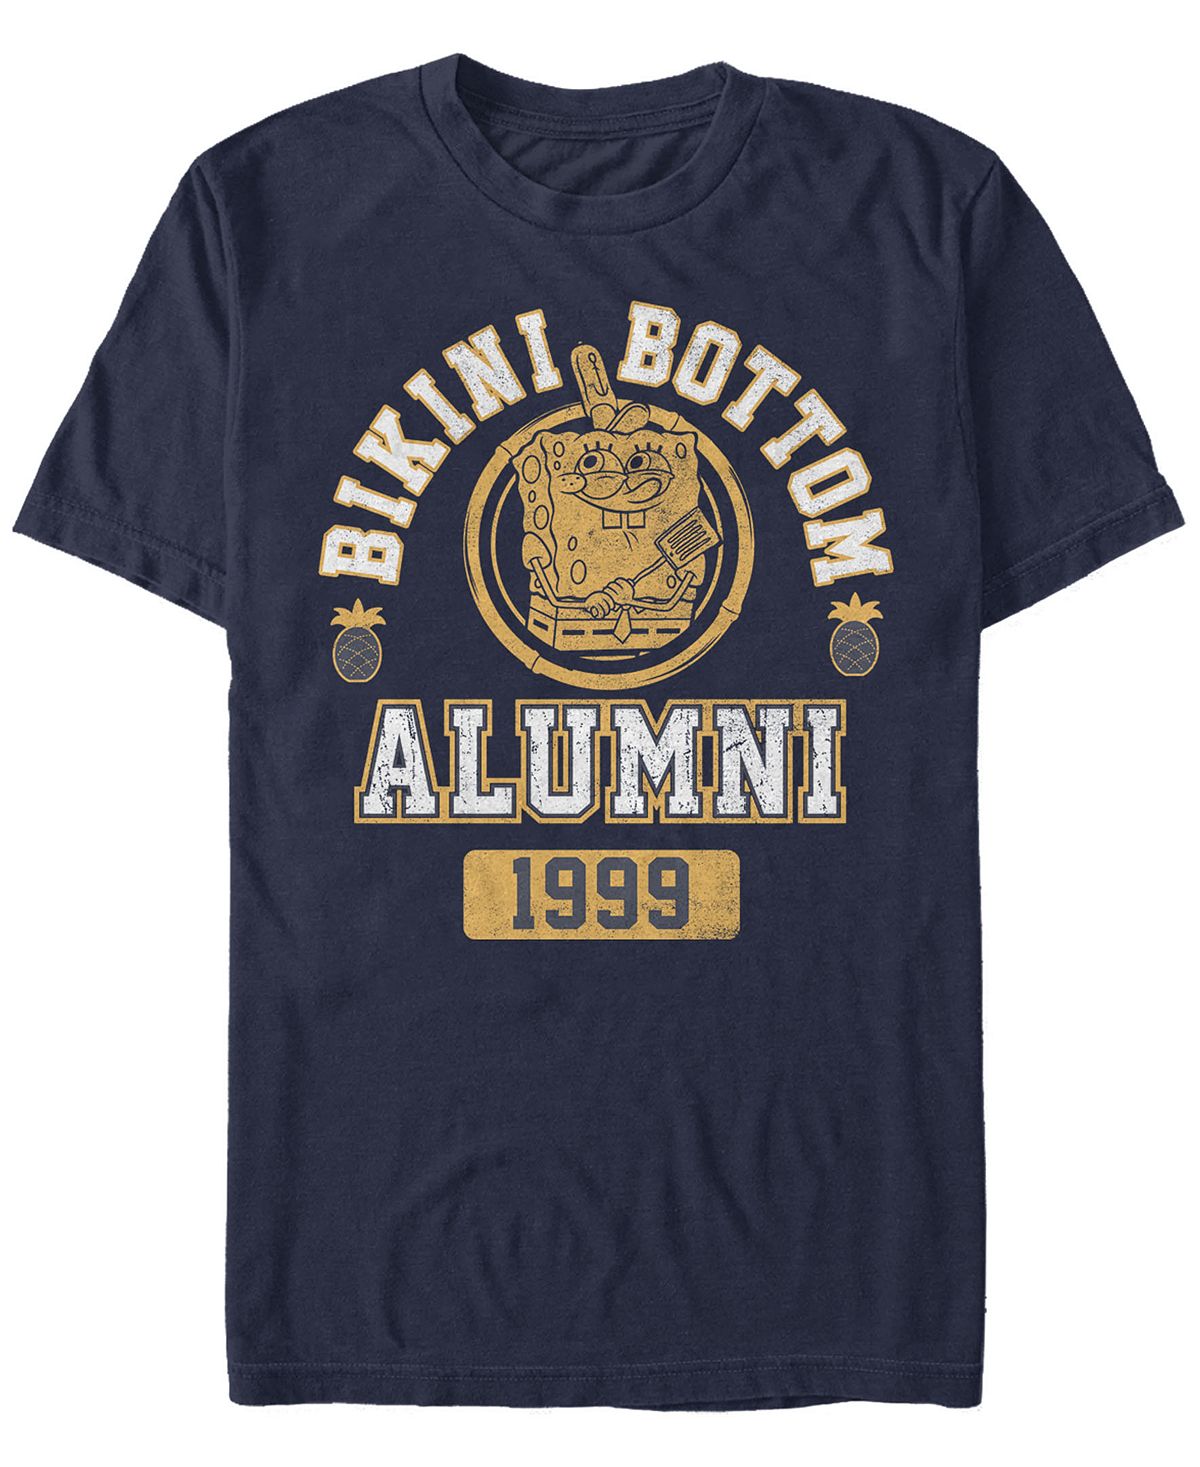 Мужская футболка с круглым вырезом с короткими рукавами и низом бикини alumni Fifth Sun, синий